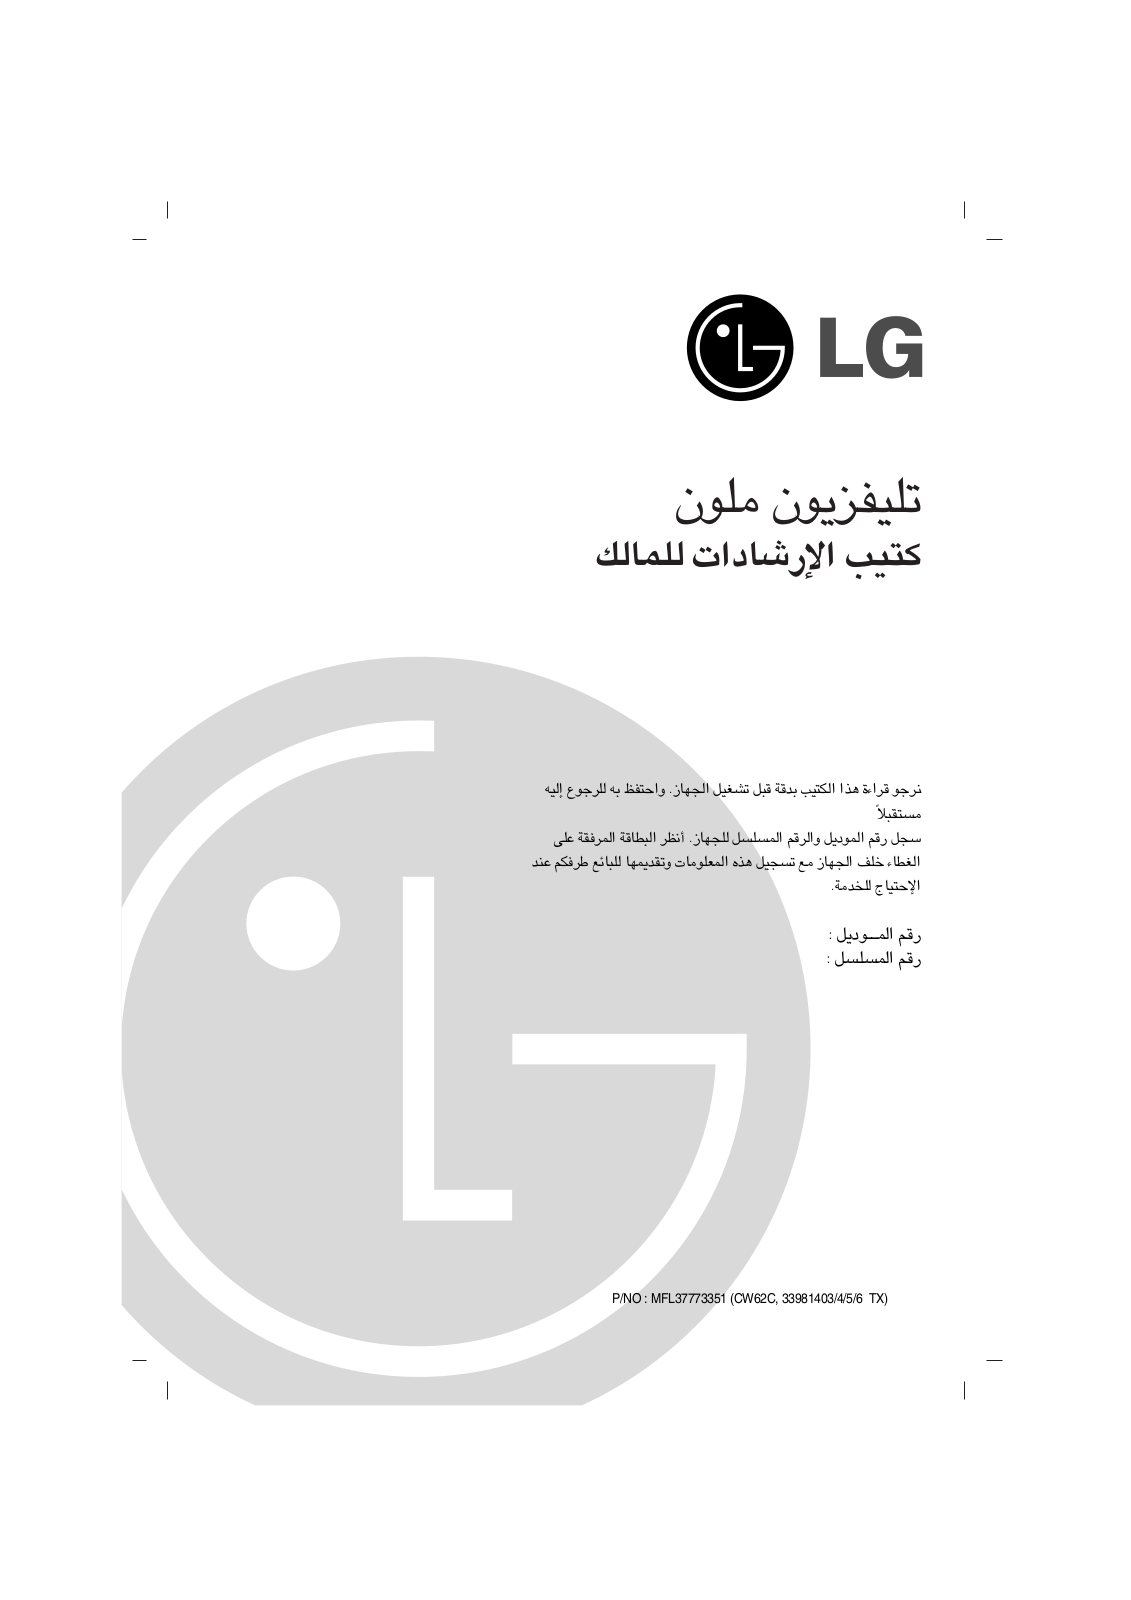 Lg 29FS7R User Manual